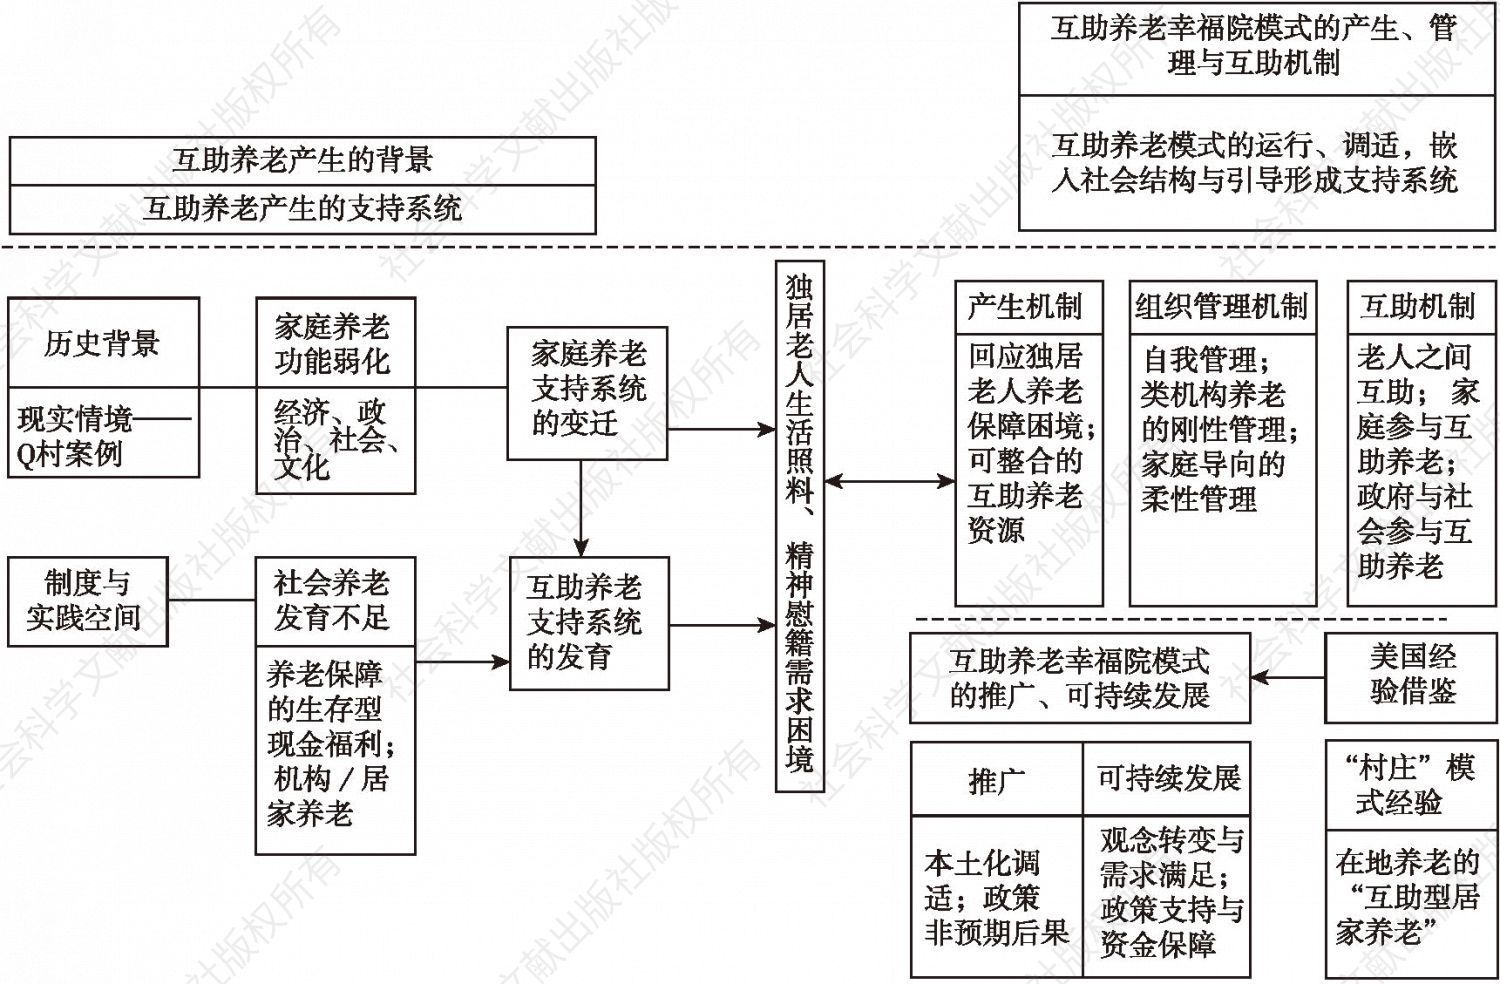 图1-1 研究框架